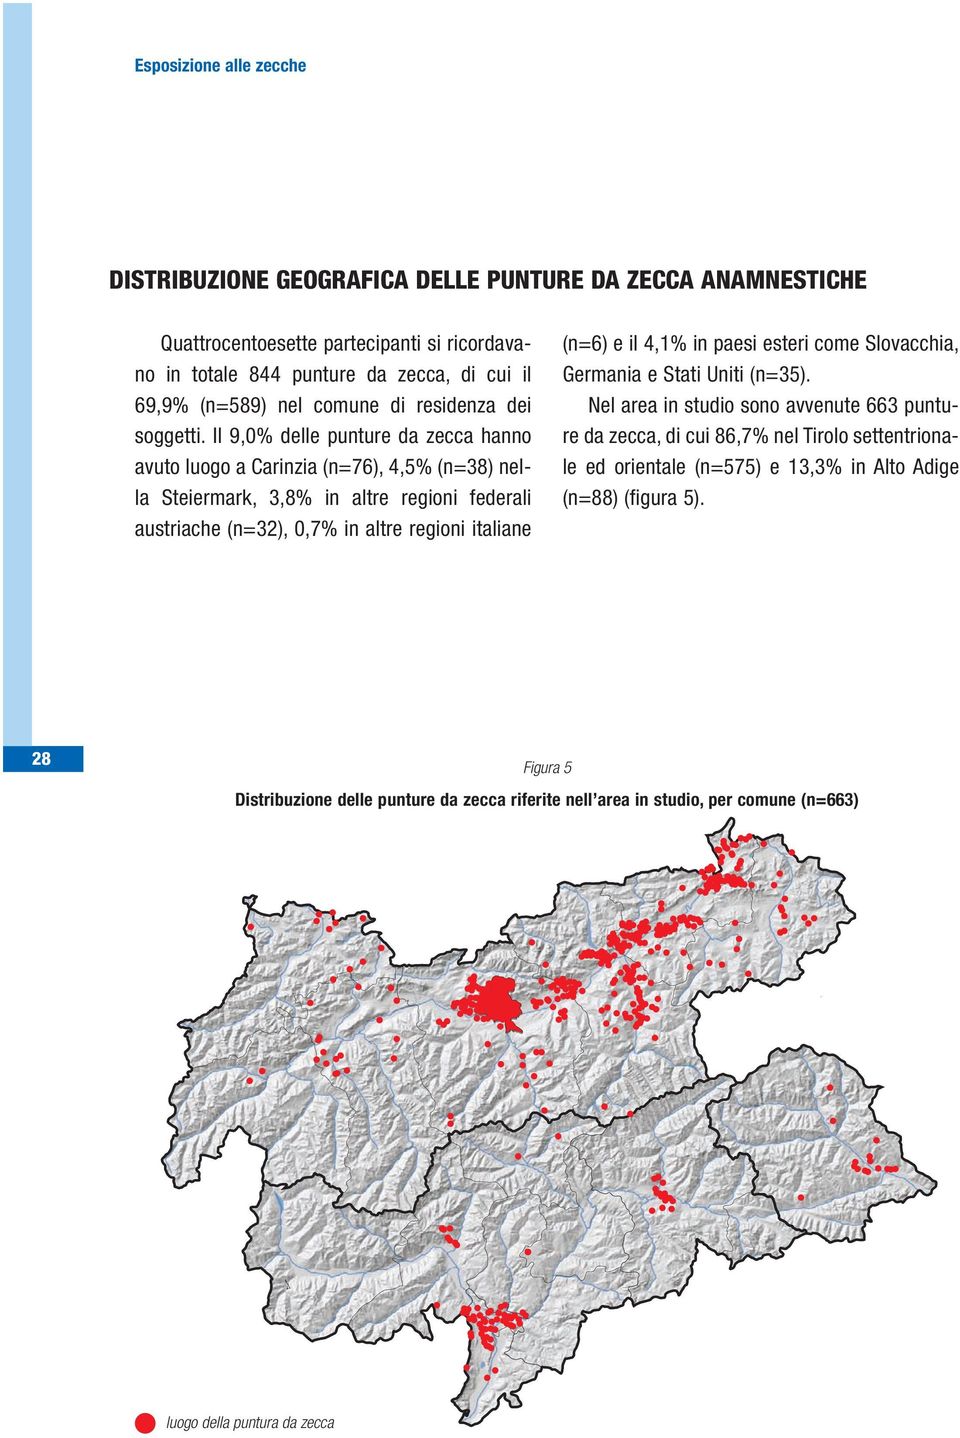 Il 9,0% delle punture da zecca hanno avuto luogo a Carinzia (n=76), 4,5% (n=38) nella Steiermark, 3,8% in altre regioni federali austriache (n=32), 0,7% in altre regioni italiane (n=6)